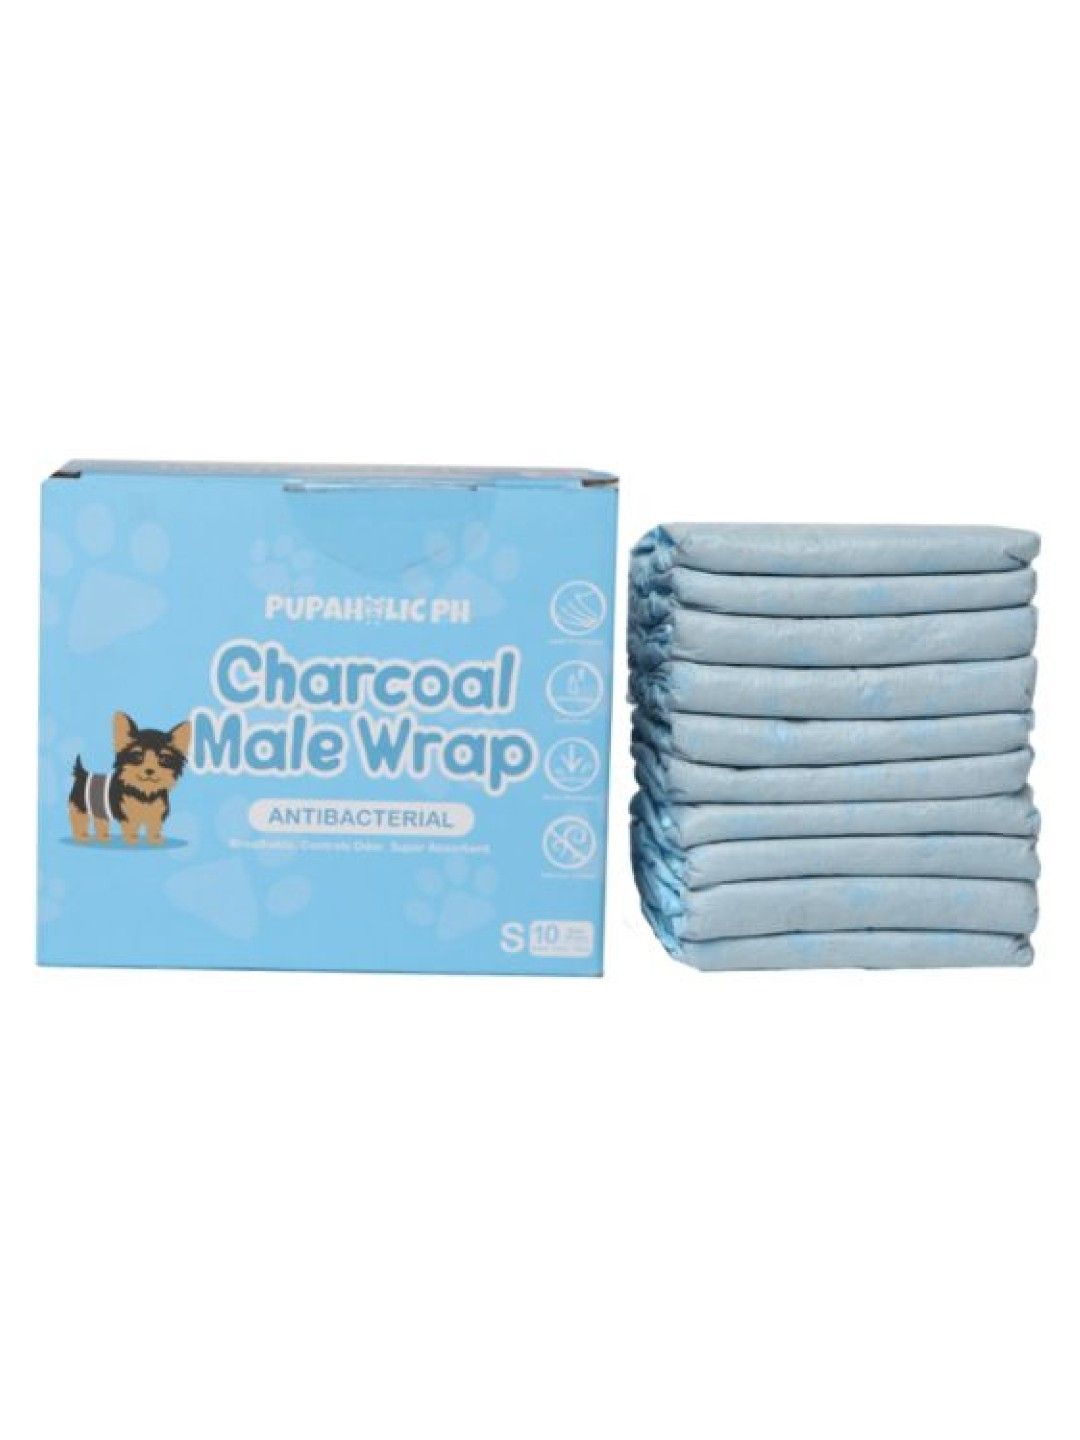 Pupaholic PH 1 Box of Charcoal Male Wrap 10Pcs/Box - Small